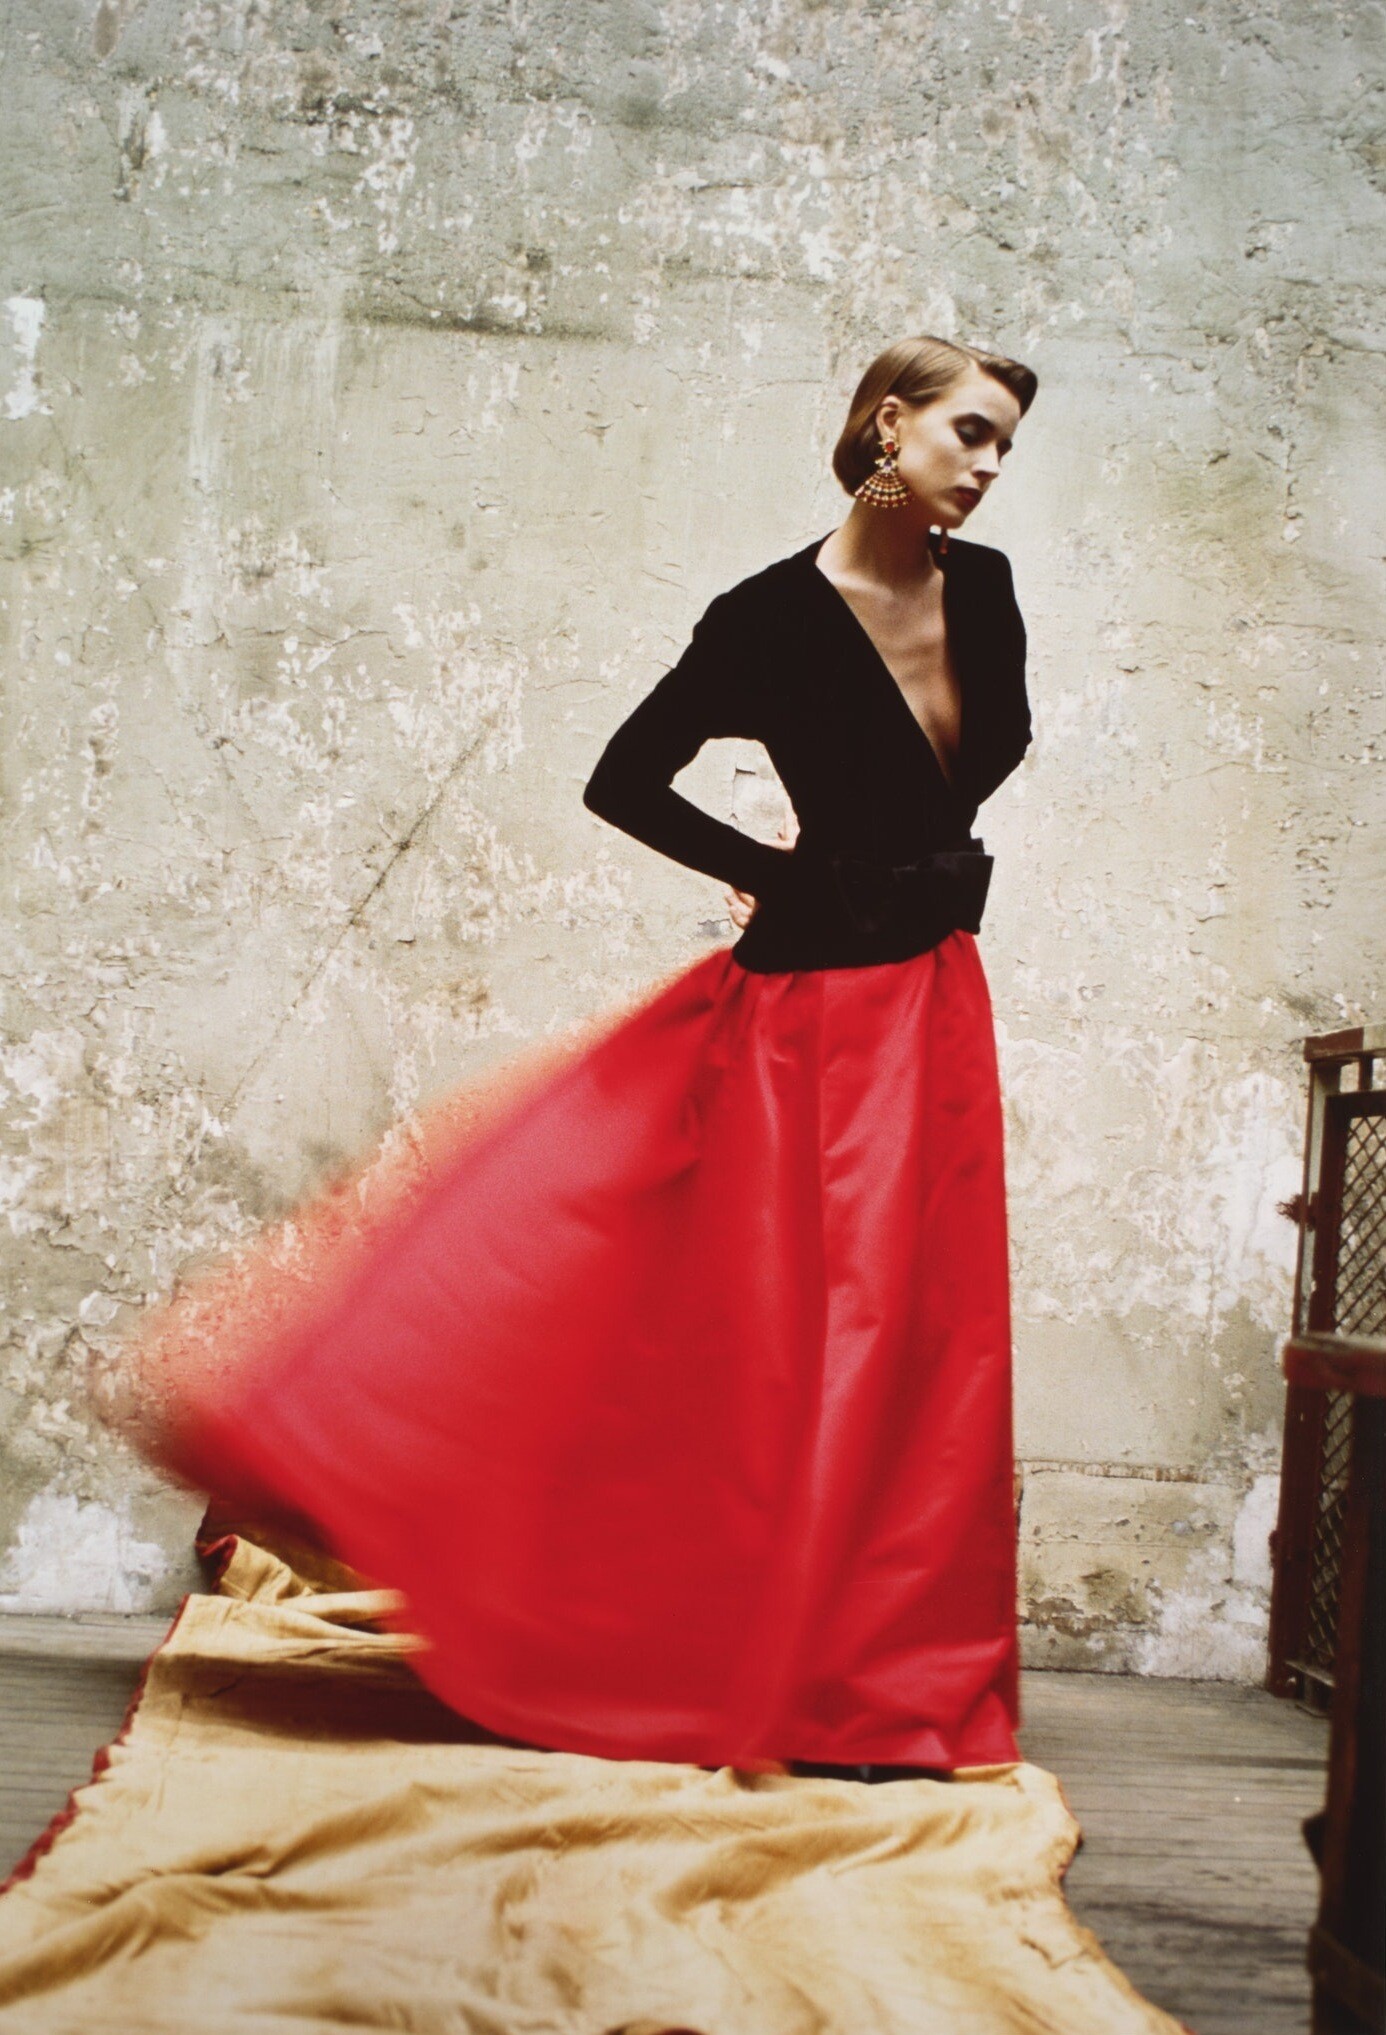 Модель Ива Сен-Лорана. Vogue Italia, 1985. Фотограф Дэвид Сайднер